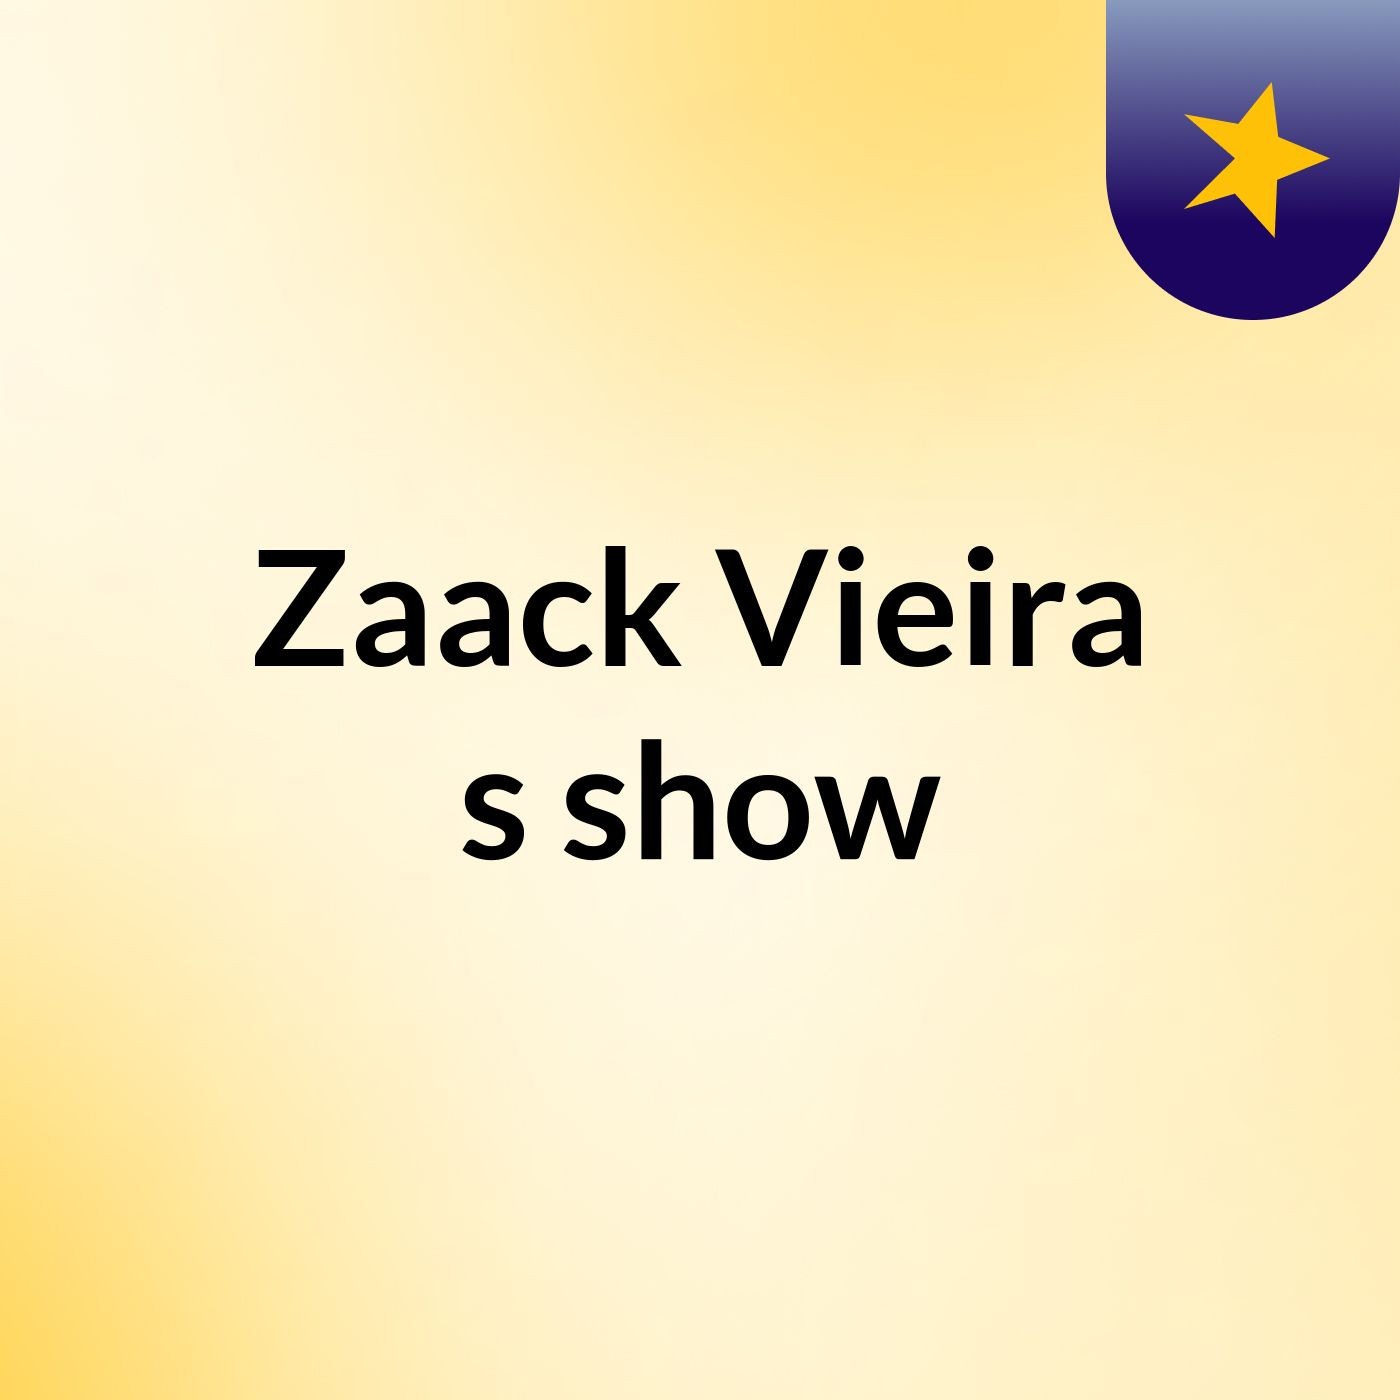 Zaack Vieira's show